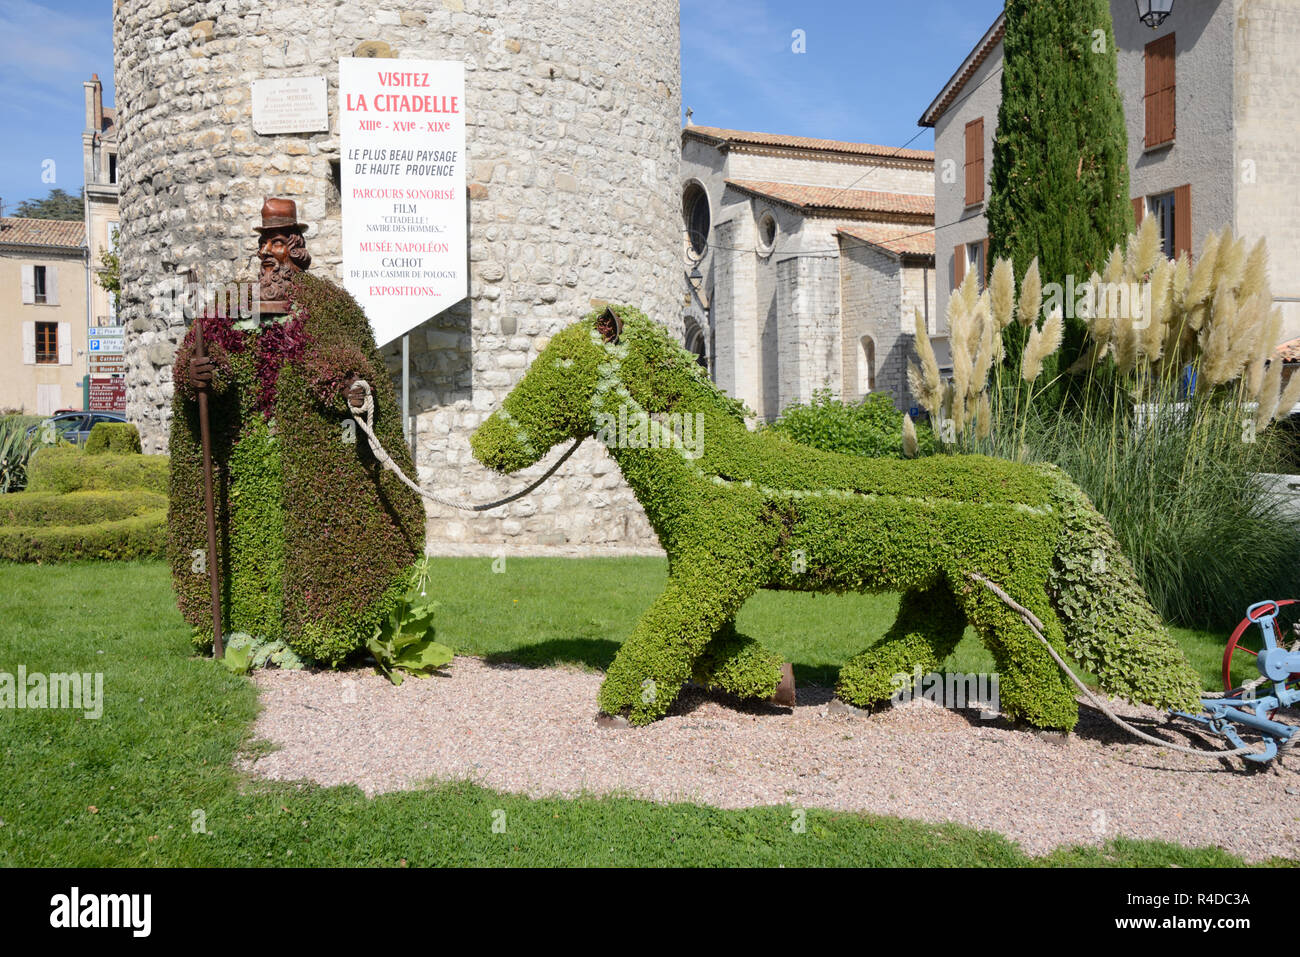 Escultura Topiary de Shephard provenzal o agricultor y burro en Town Square Sisteron Provence Francia Foto de stock